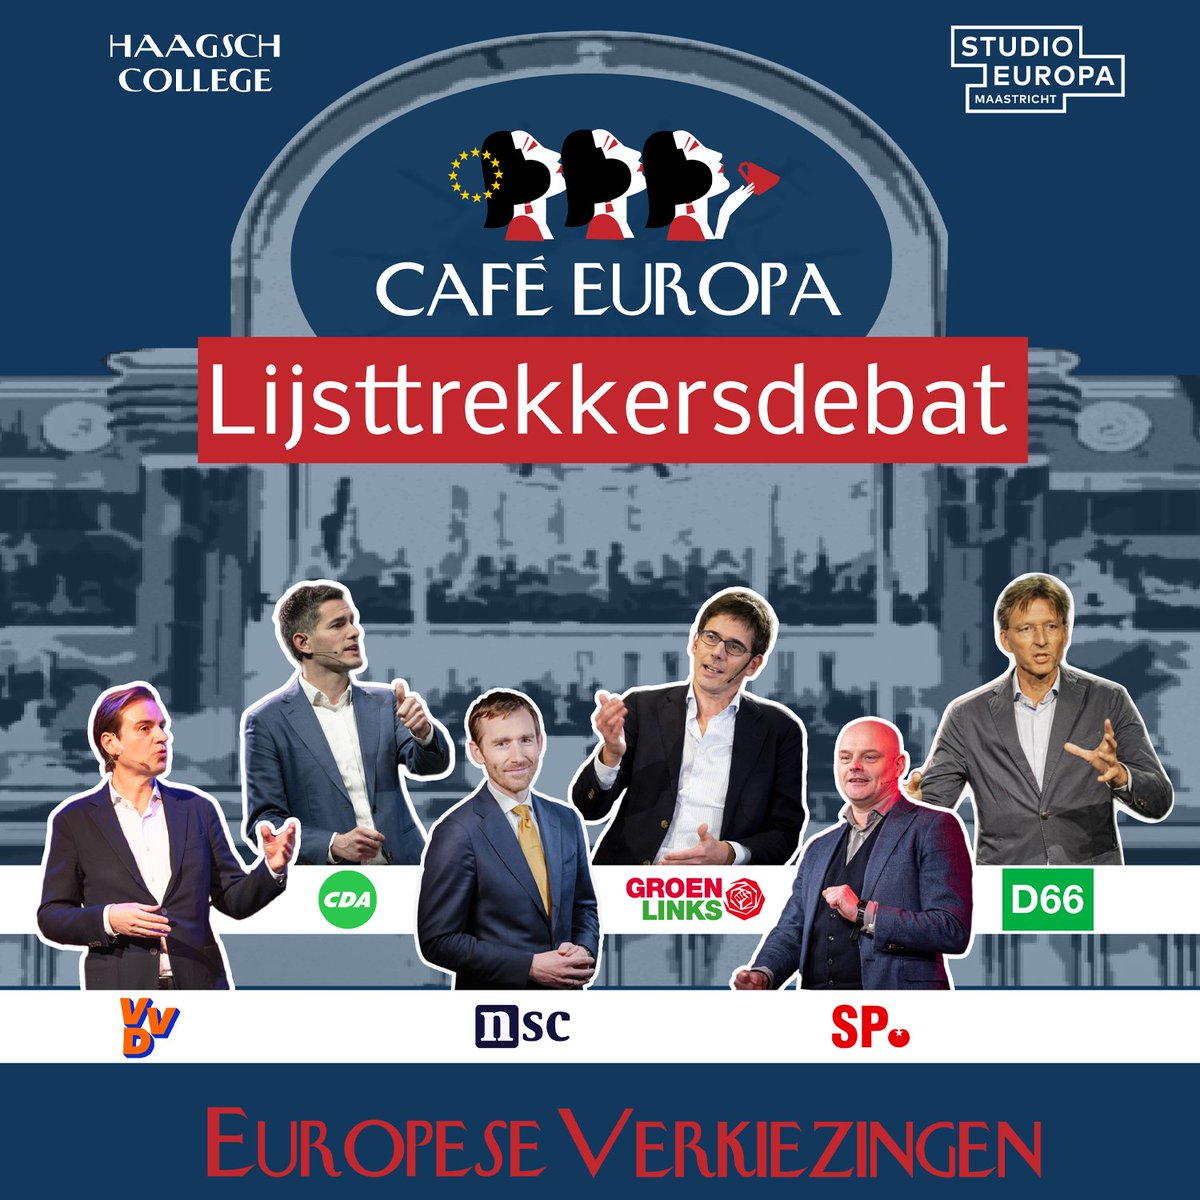 🇪🇺Het Café Europa Lijsttrekkersdebat @nieuwspoort. Vanmiddag vanaf 15 uur LIVE @NPOpolitiek! Met: @MalikAzmani, @tbwberendsen, @DirkGotink, @BasEickhout, @GerrieElfrink & @Gerbrandy. Olv @annettevansoest & Stefan de Vries Of kijk via onze livestream haagschcollege.nl/college/eudebat